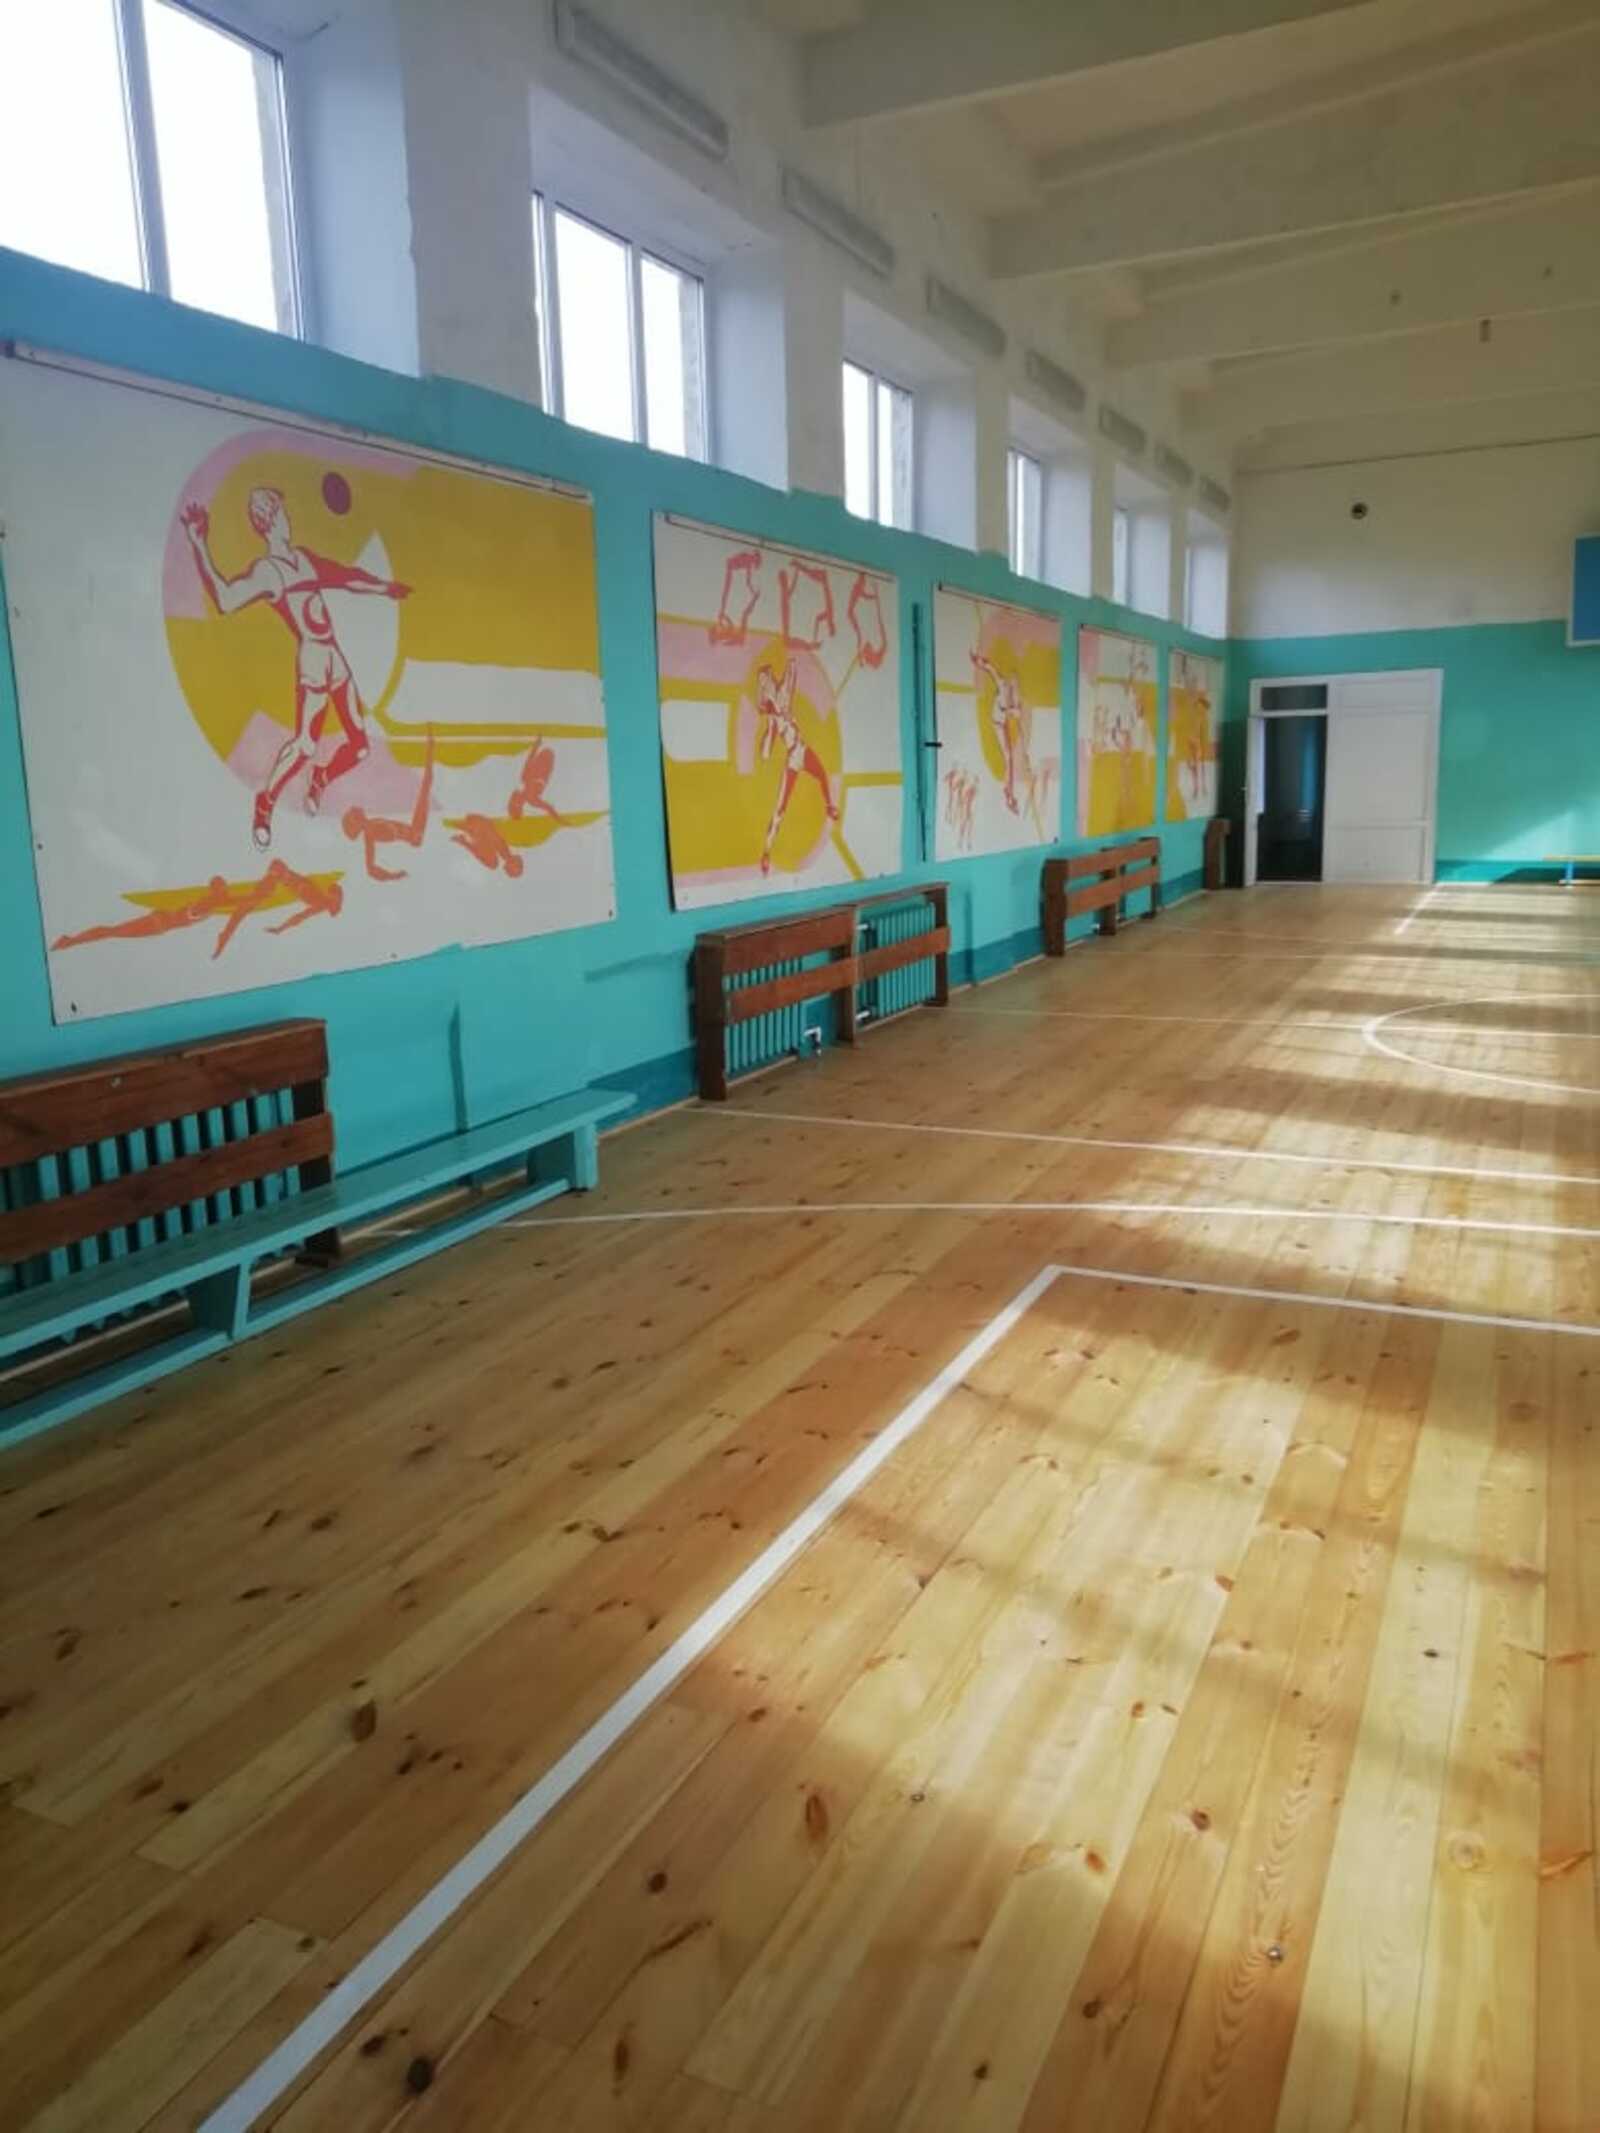 Нацпроект "Образование": в Асяновской школе Дюртюлинского района отремонтировали спортзал